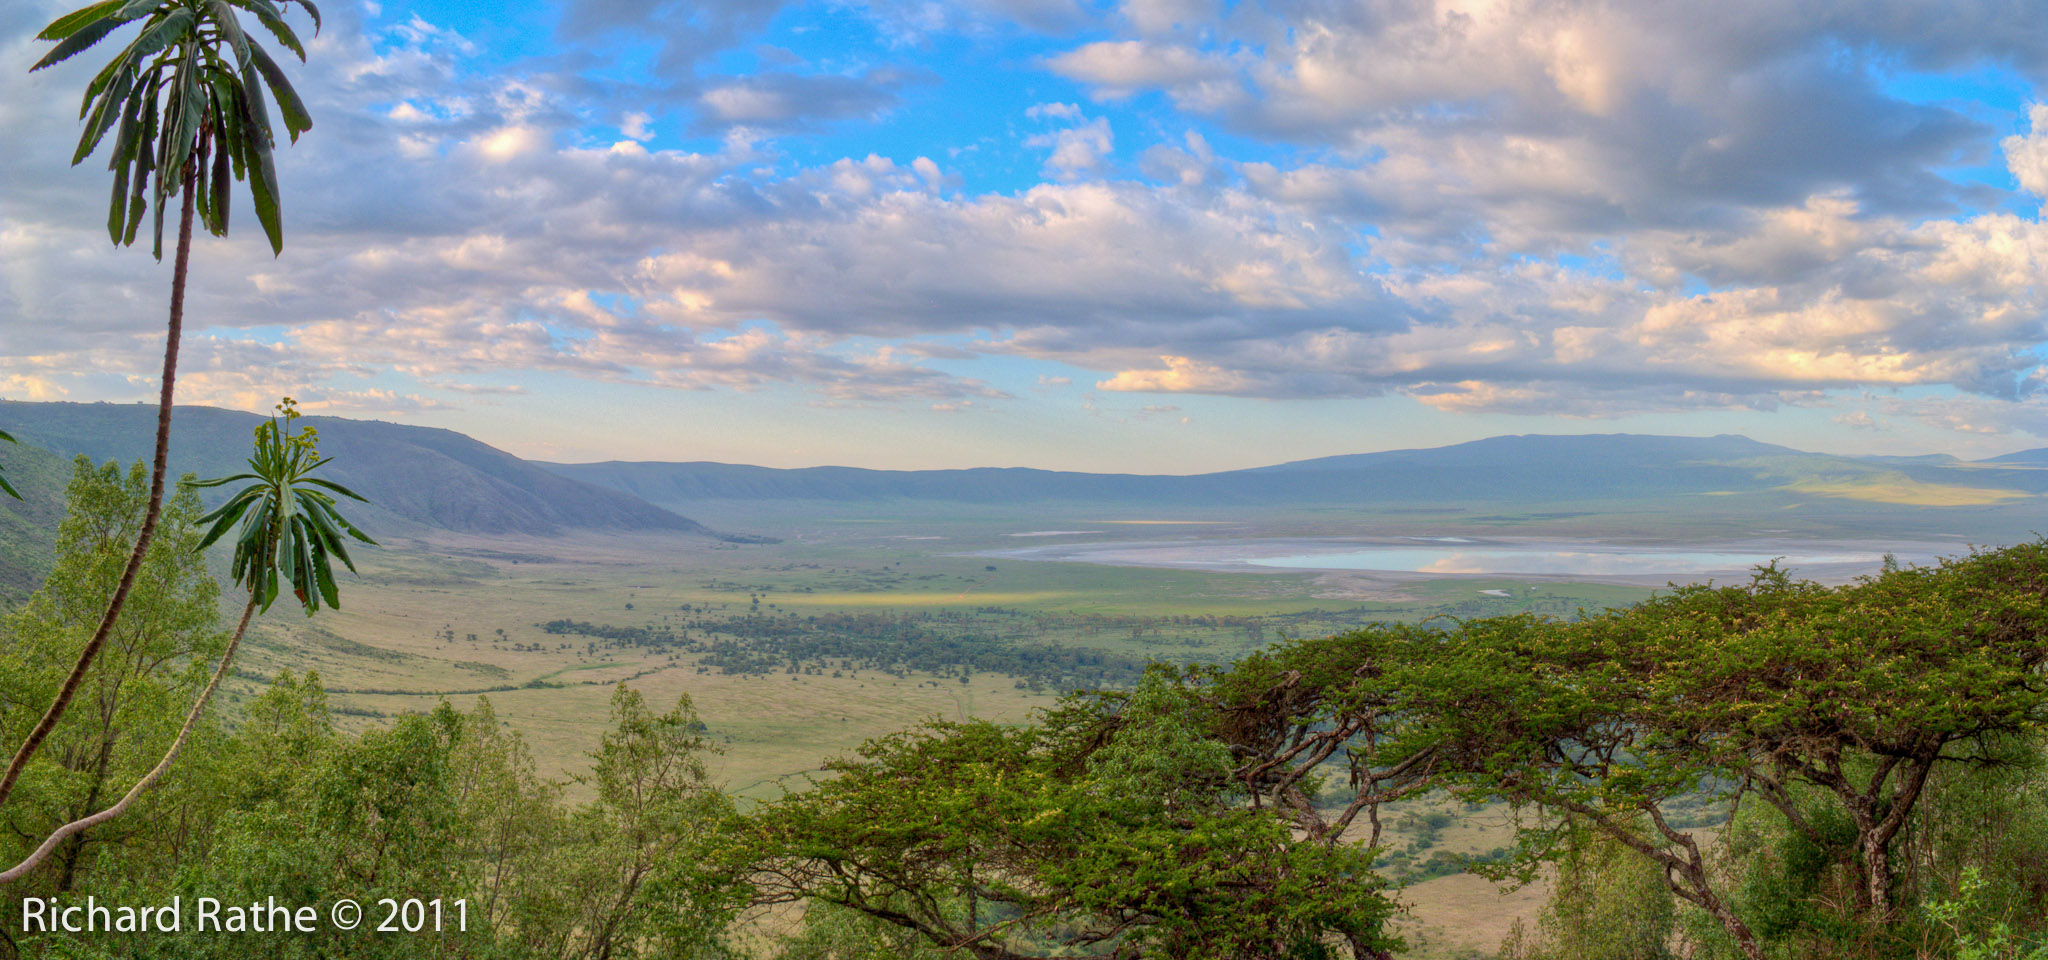 Ngorongoro Crater at Sunset (cropped)